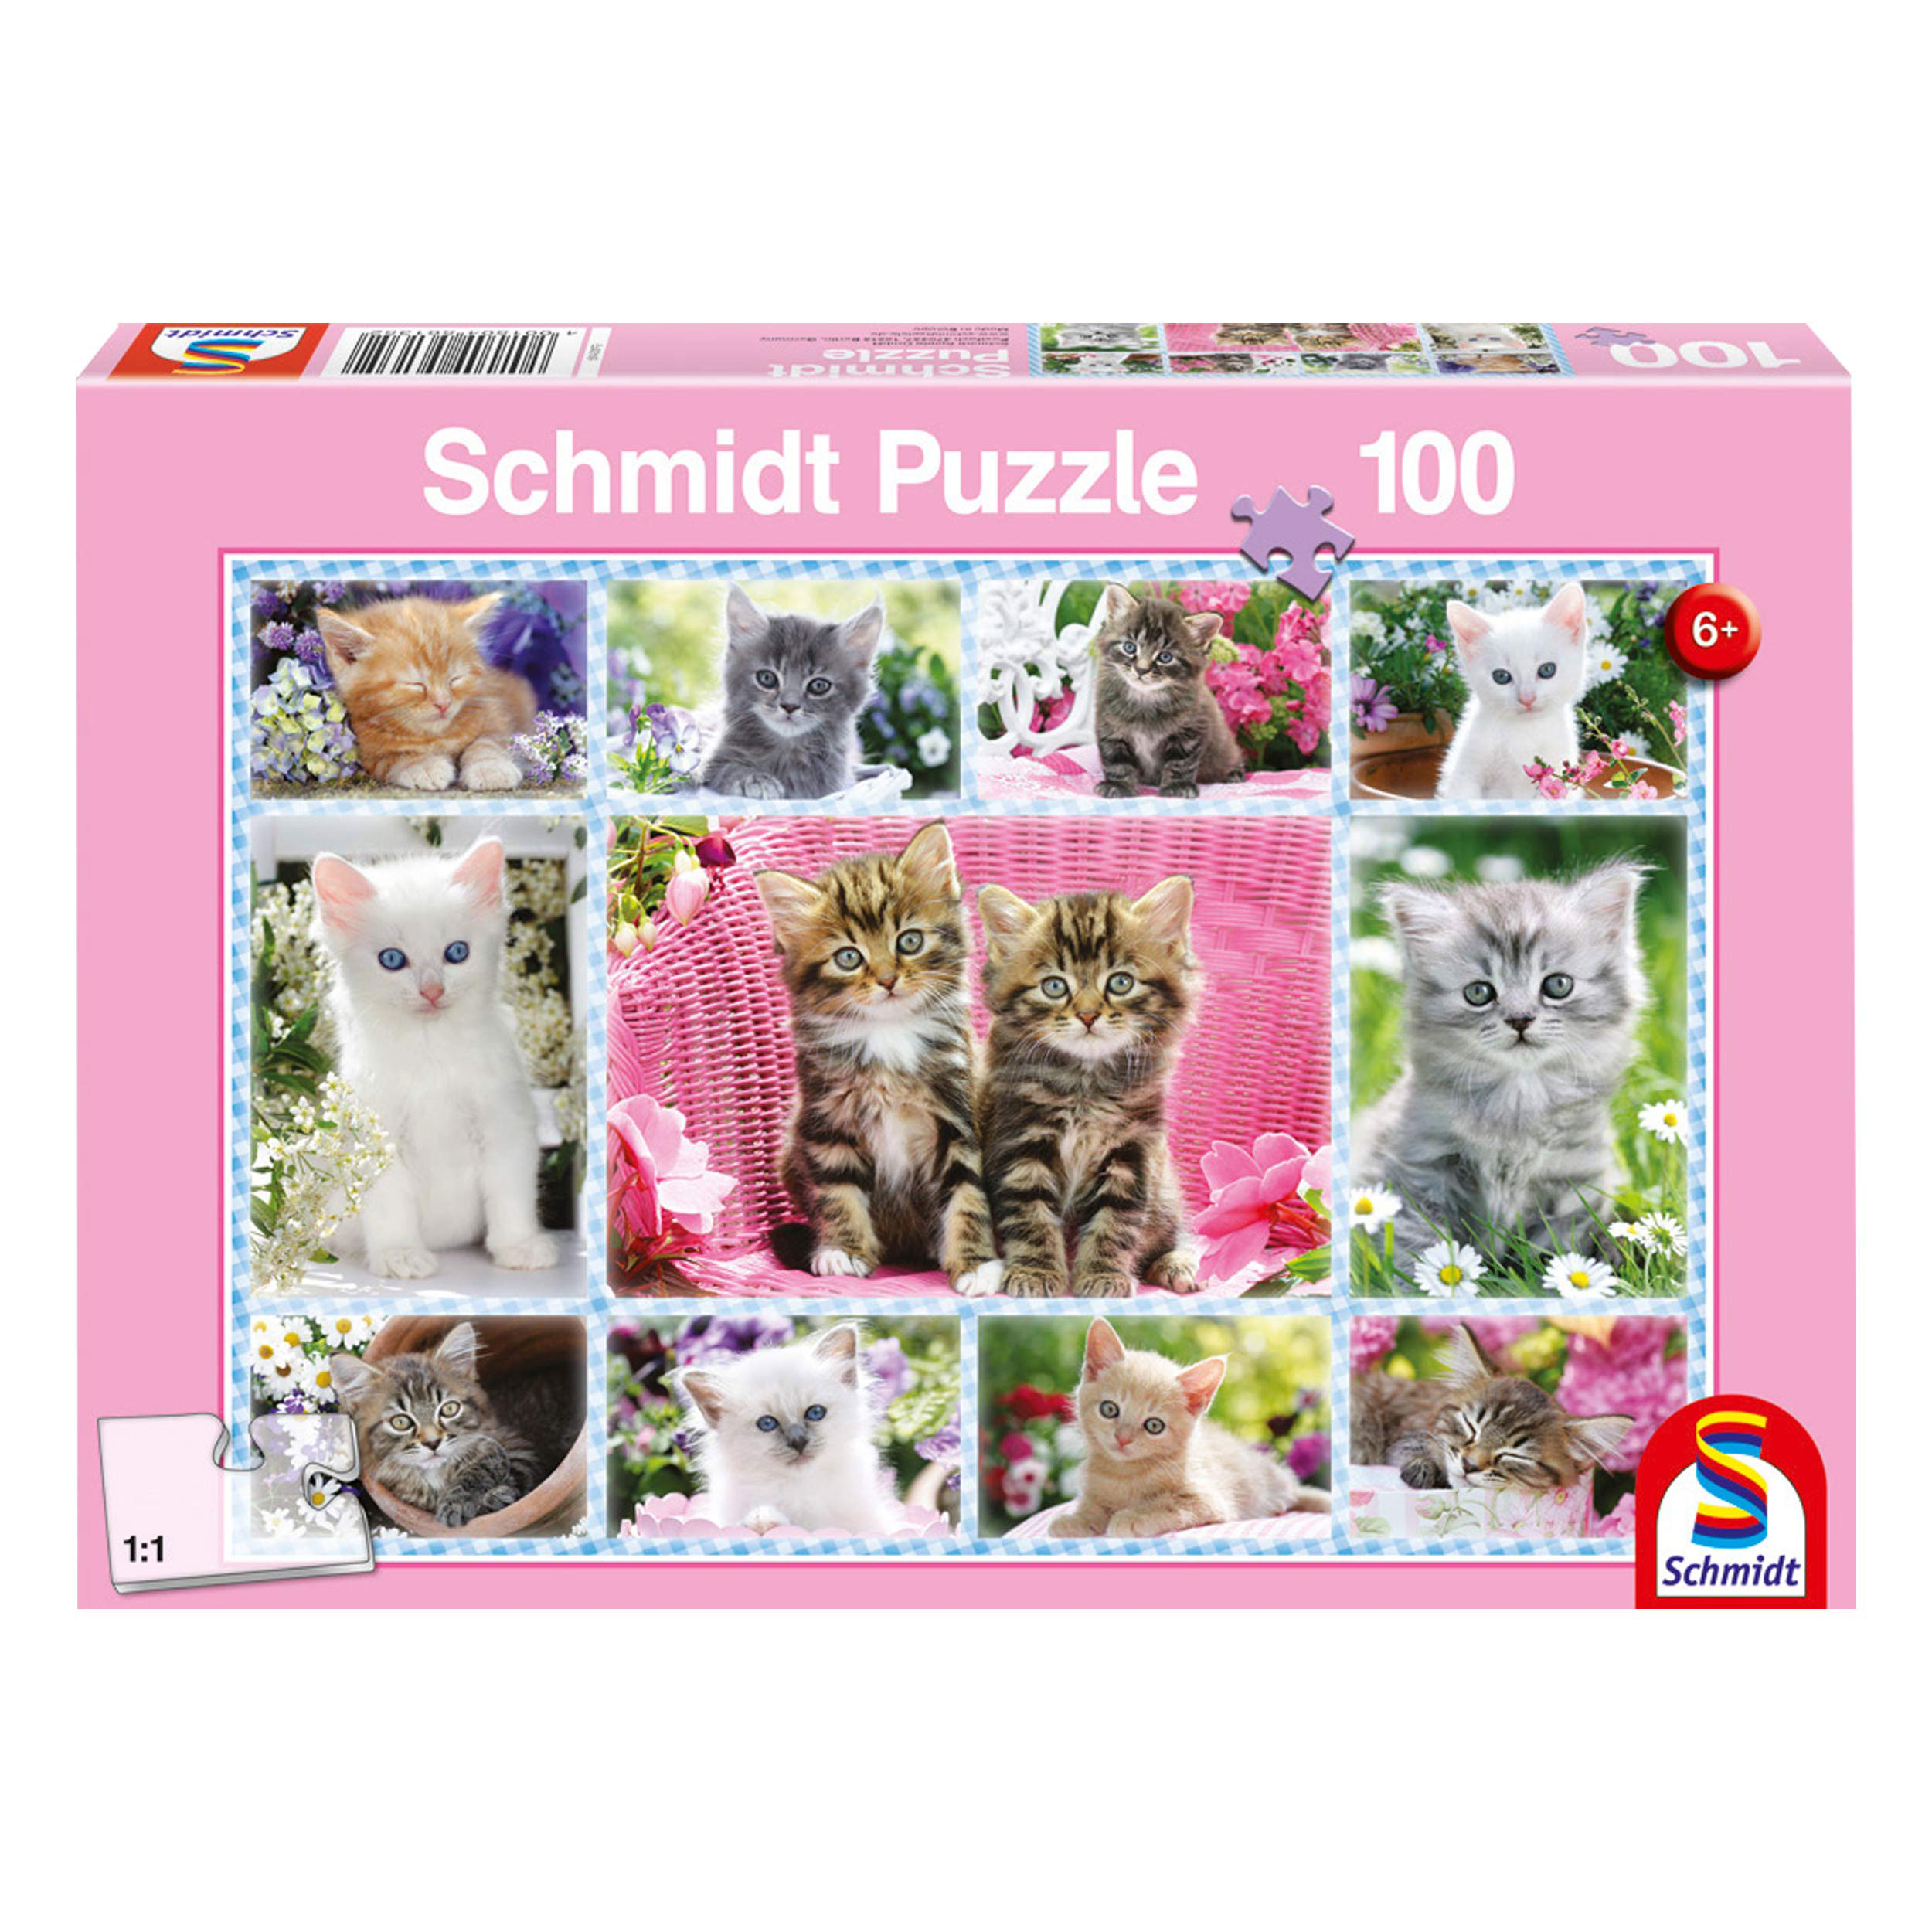 SCHMIDT SPIELE 100 Katzenbabys Teile Puzzle Puzzle 